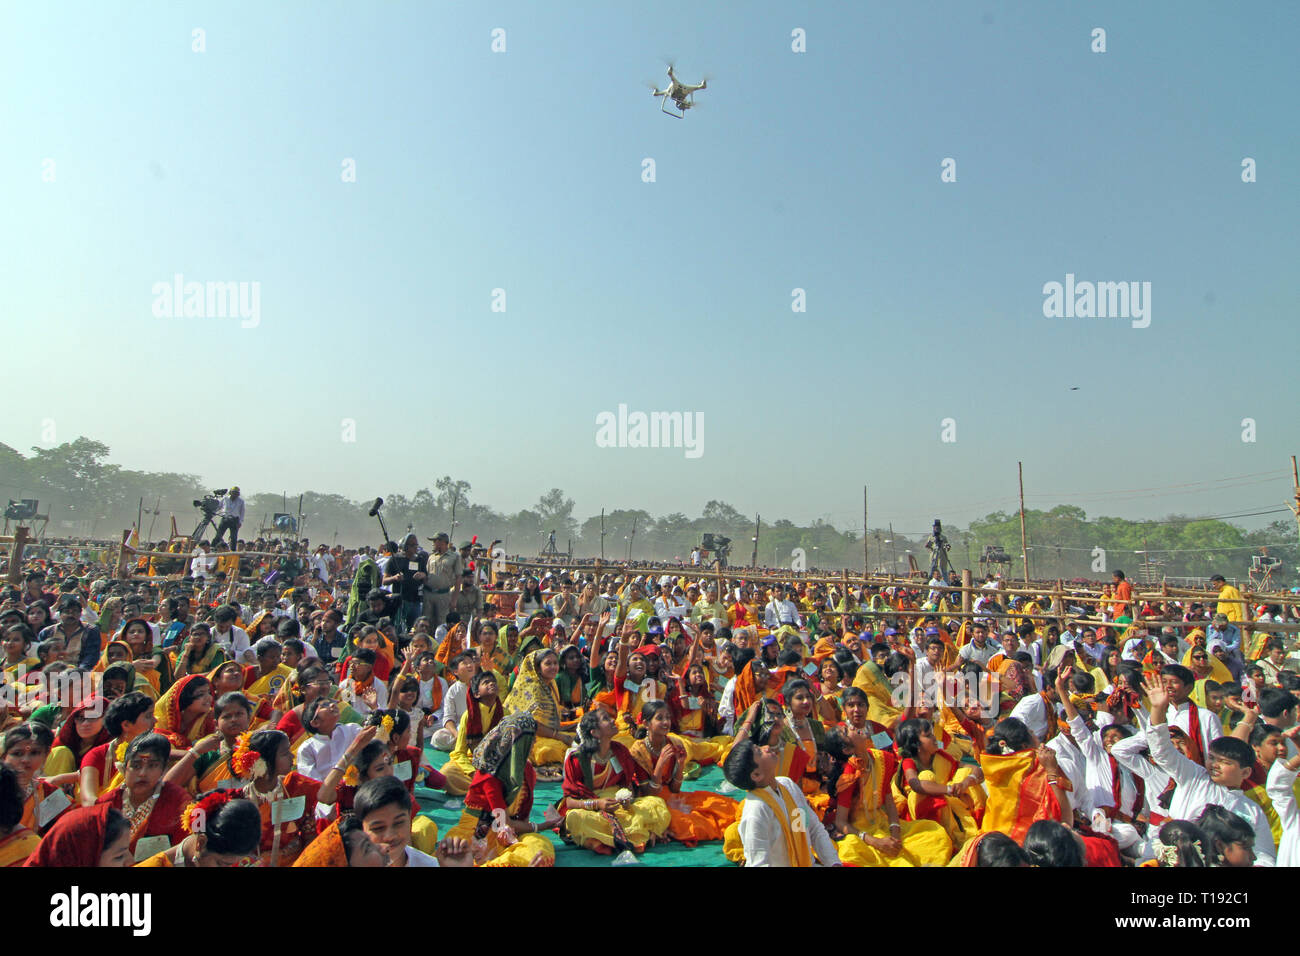 Menschen versammelt, um das Programm der "basanta Utsav' während der drohne  Kamera Fotos von der Oberseite des Programms zu sehen. Rabindranath Tagore  erster Nobelpreisträger aus Asien eingeführt' Basanta Utsav' in  Santiniketan im